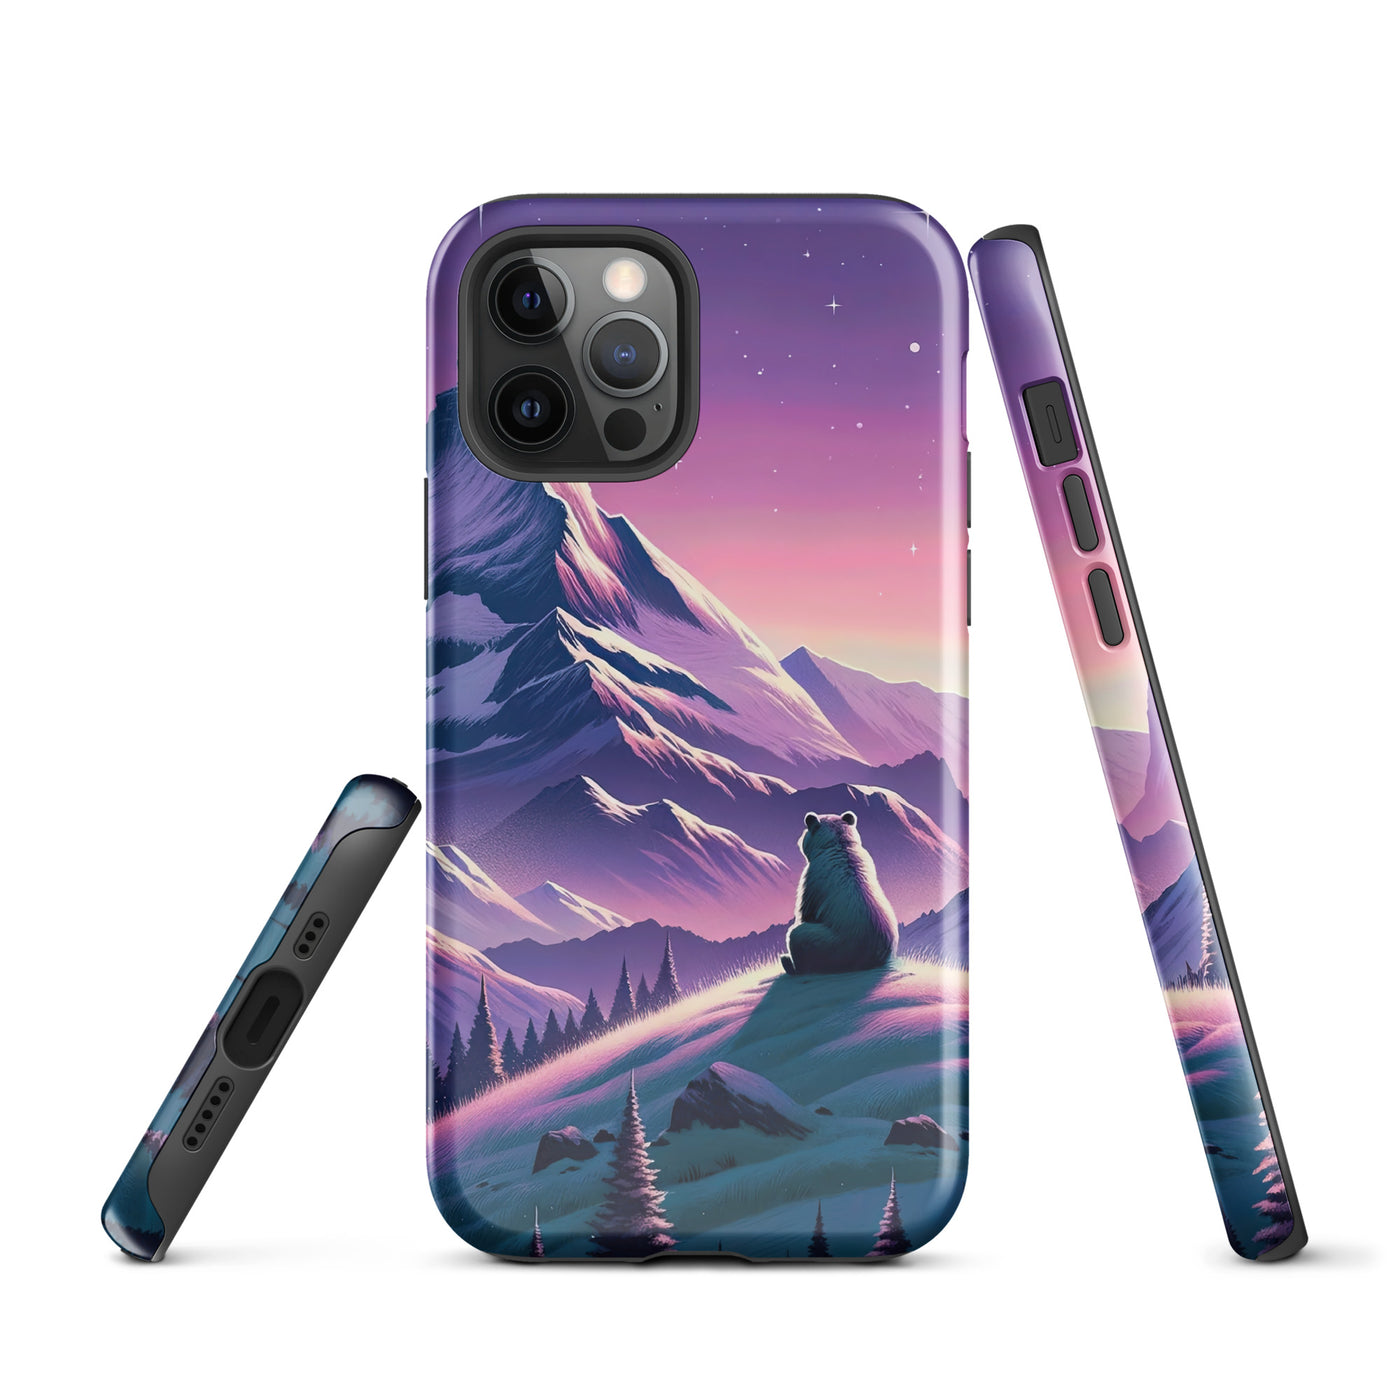 Bezaubernder Alpenabend mit Bär, lavendel-rosafarbener Himmel (AN) - iPhone Schutzhülle (robust) xxx yyy zzz iPhone 12 Pro